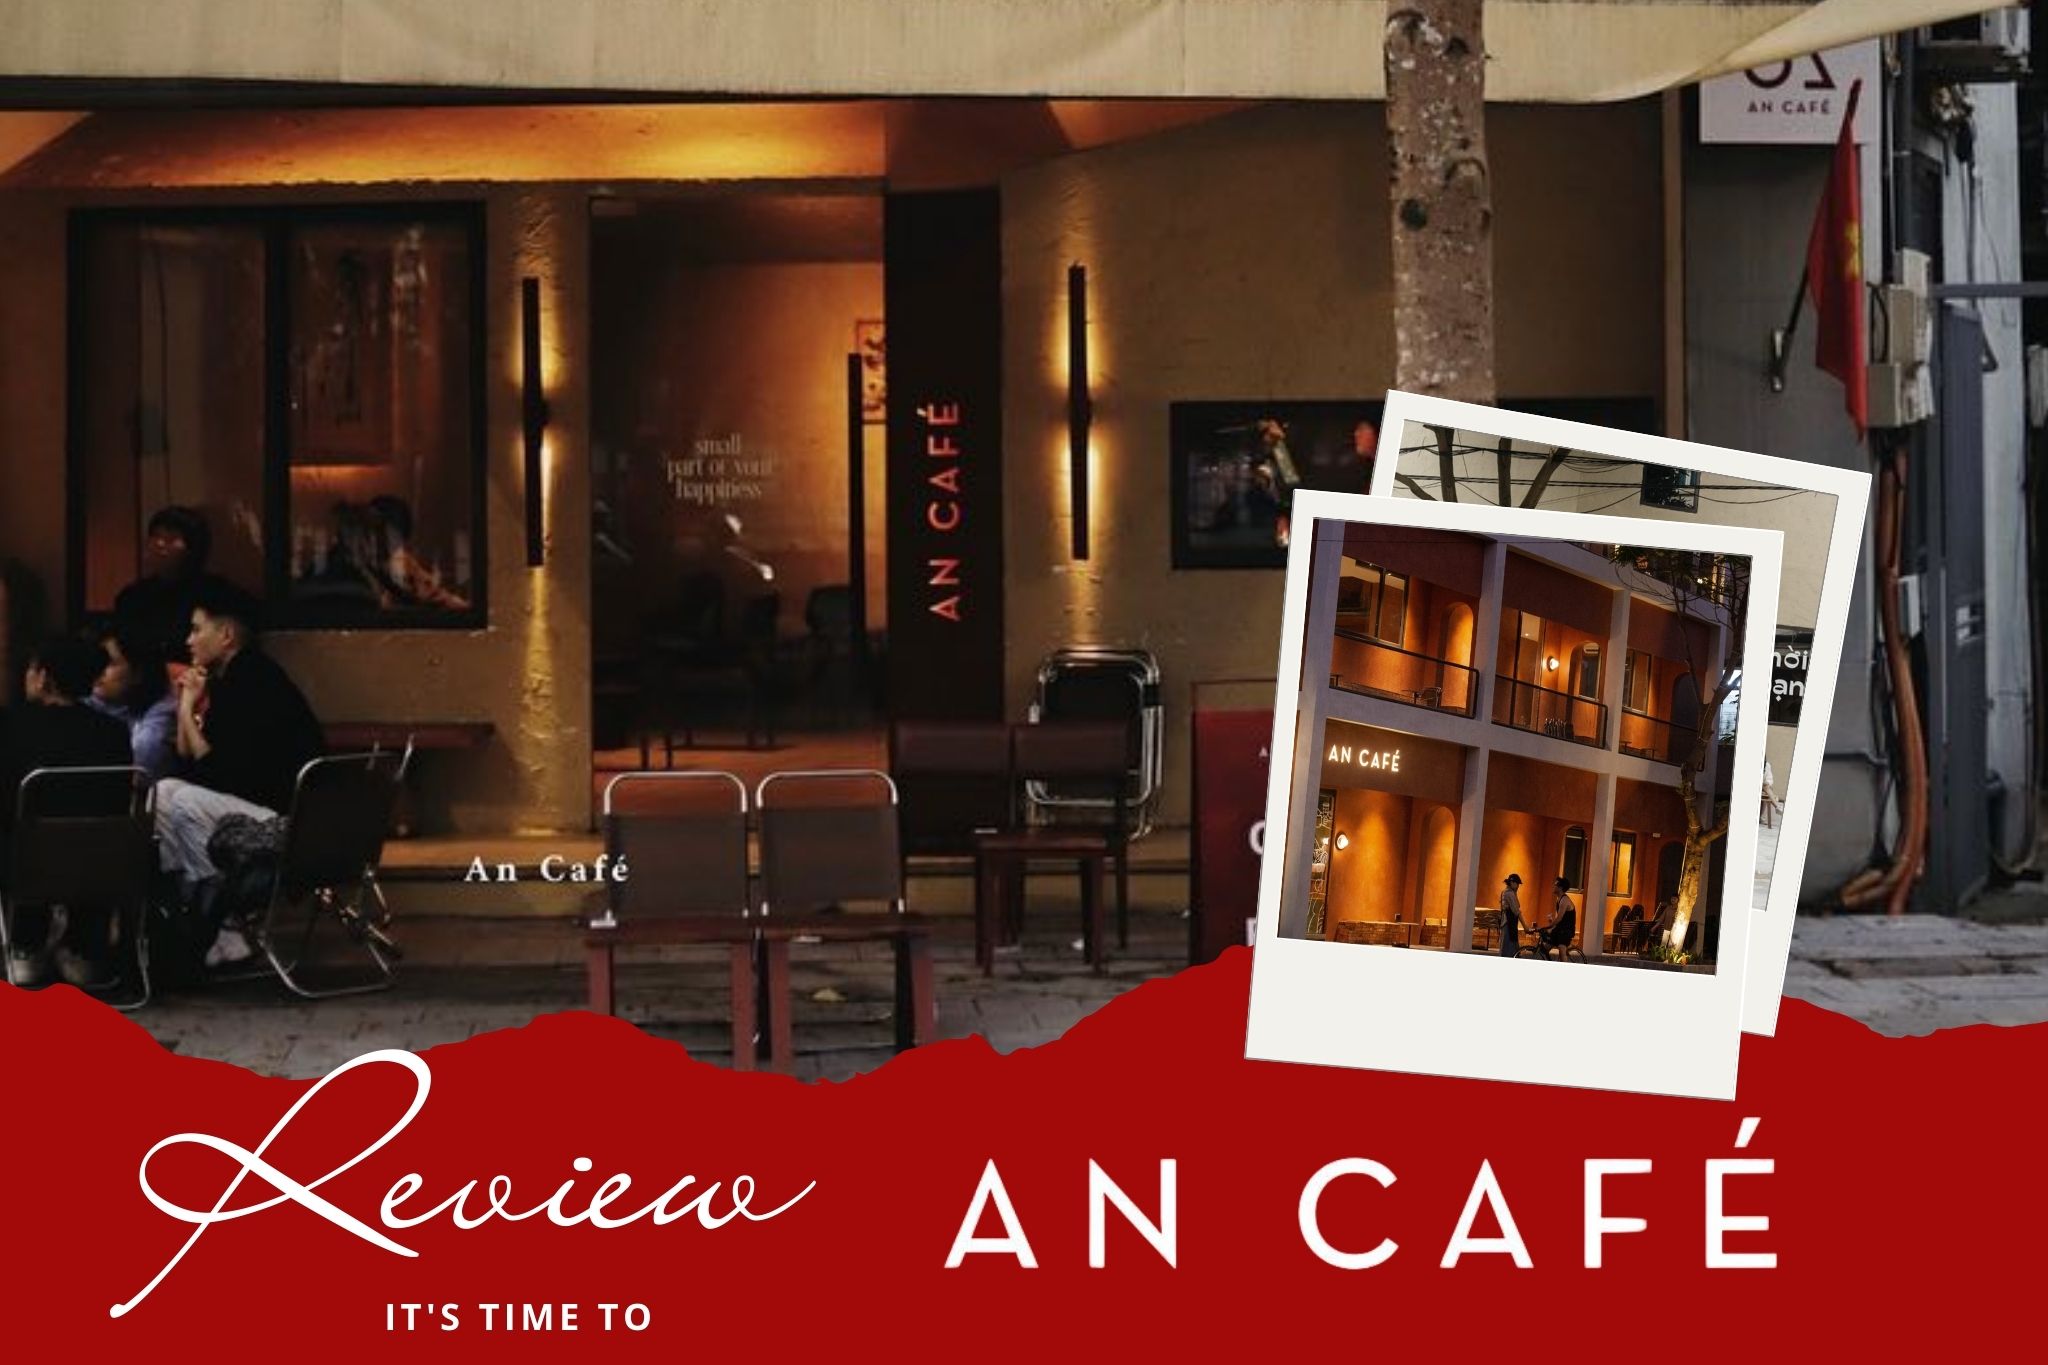 Review thiết kế AN Cafe - Thương hiệu Cafe từ vùng Kinh bắc